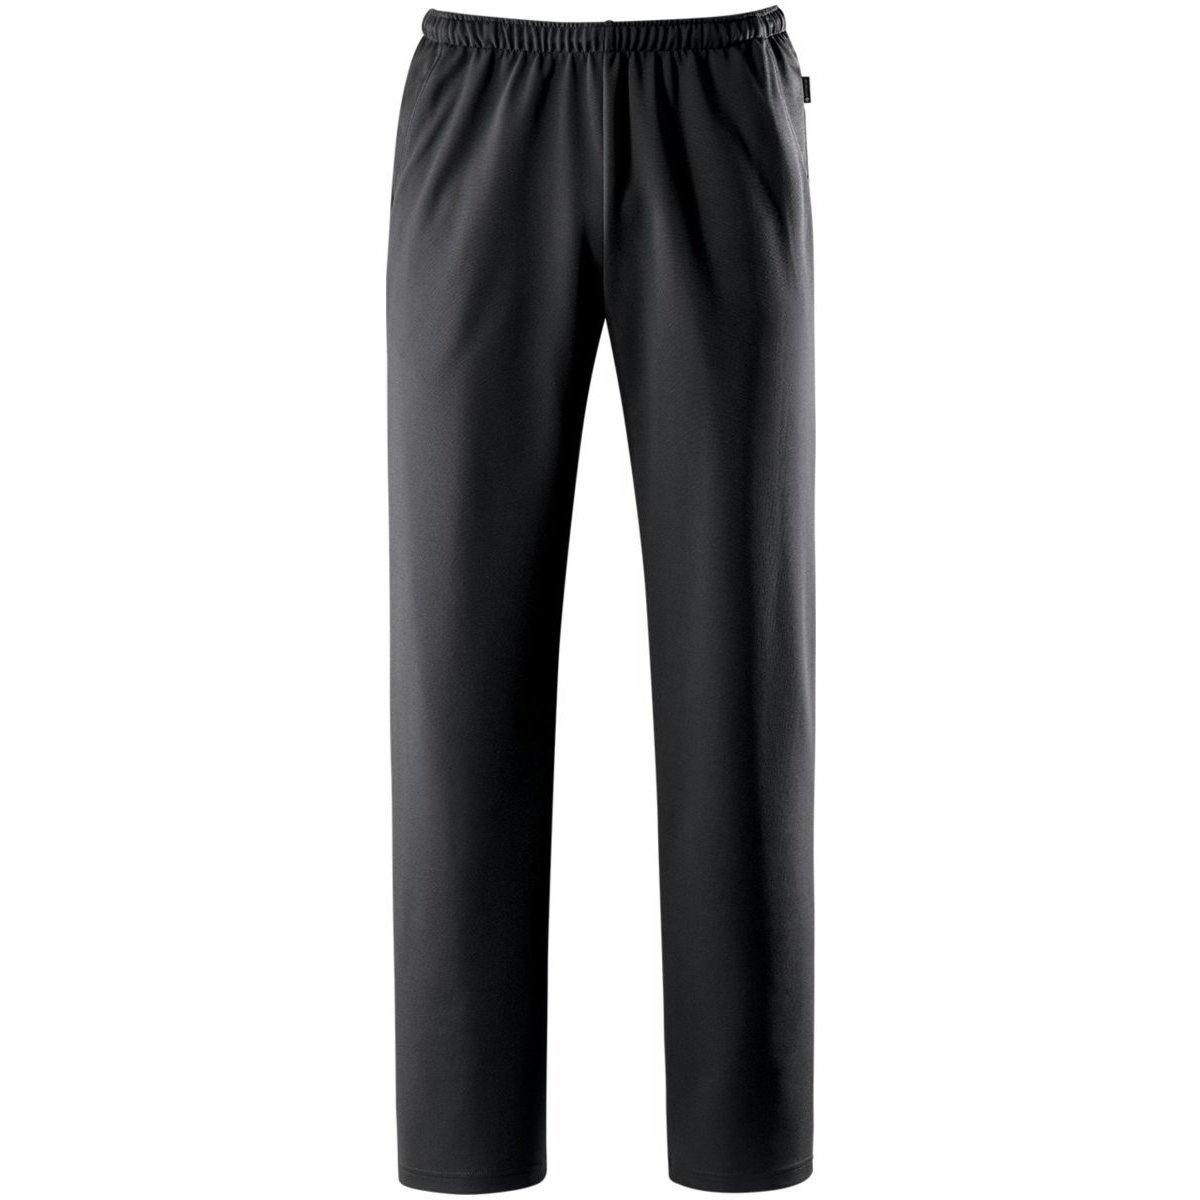 Textiel Heren Broeken / Pantalons Schneider Sportswear  Zwart